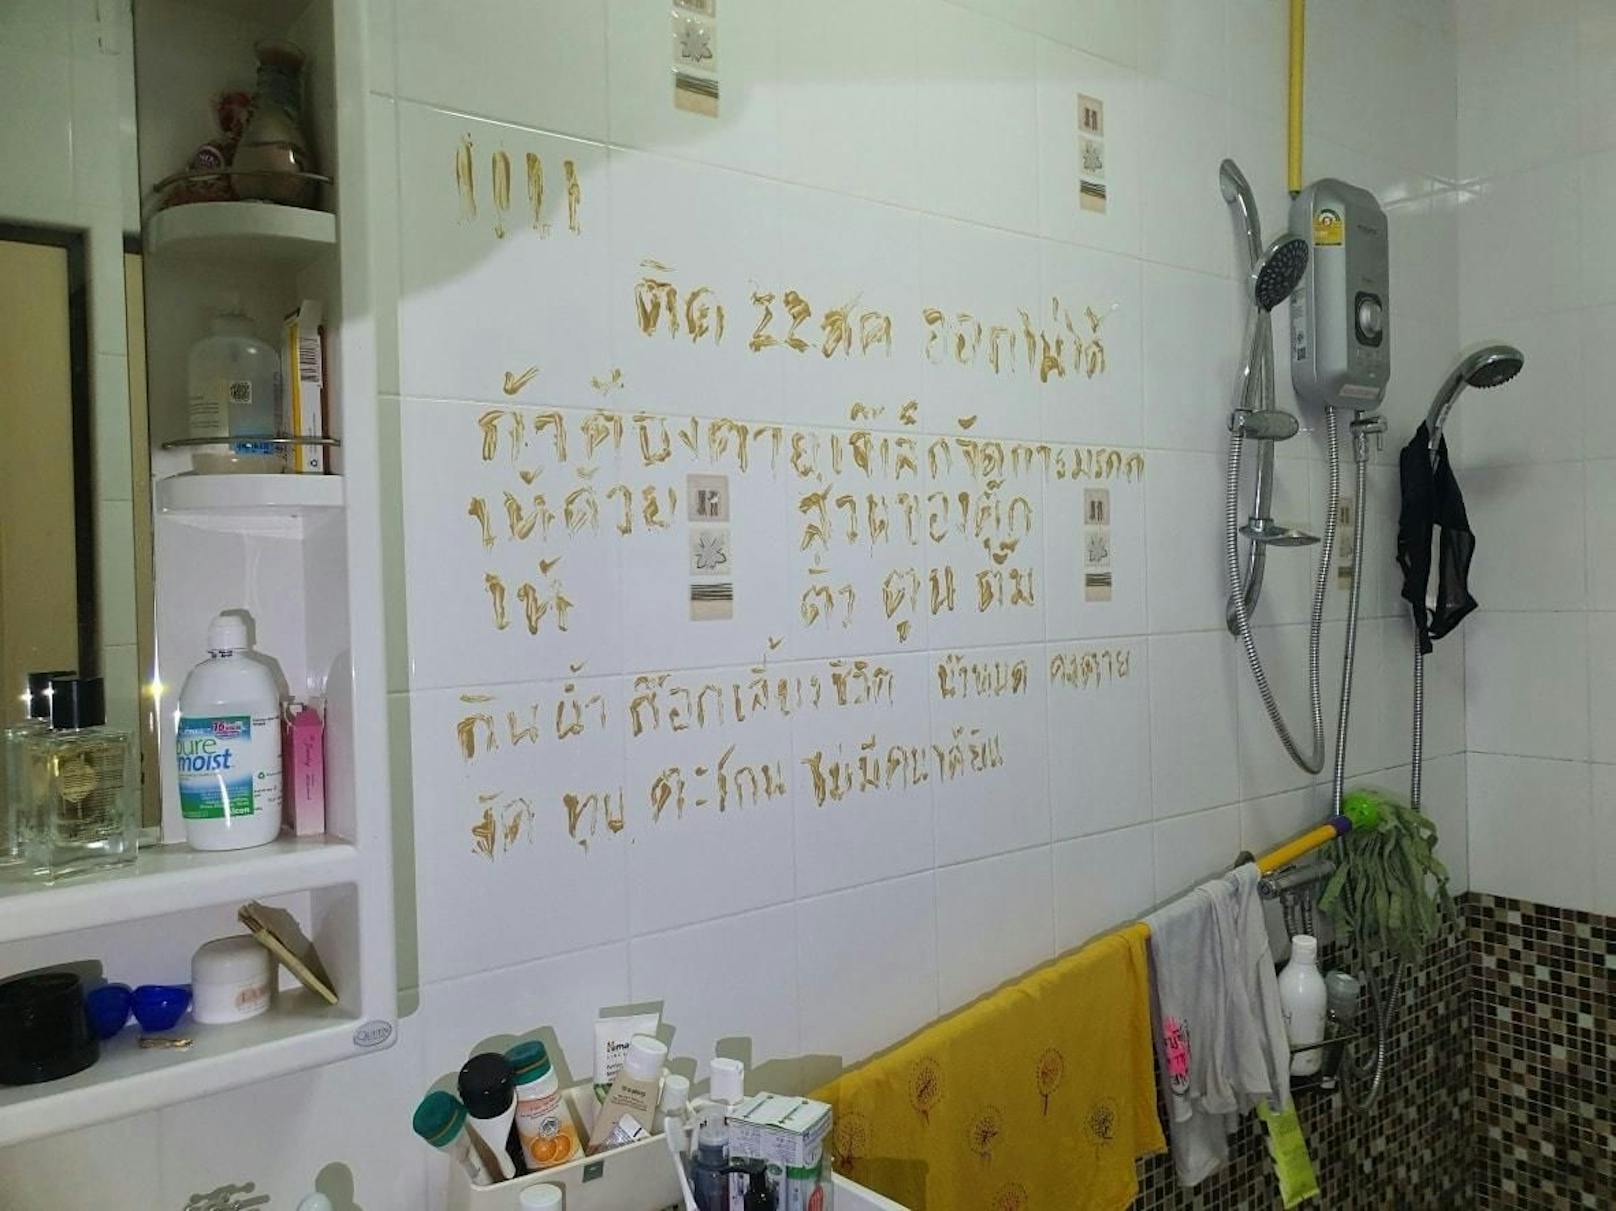 Frau schreibt ihren letzten Willen auf Badezimmerwand